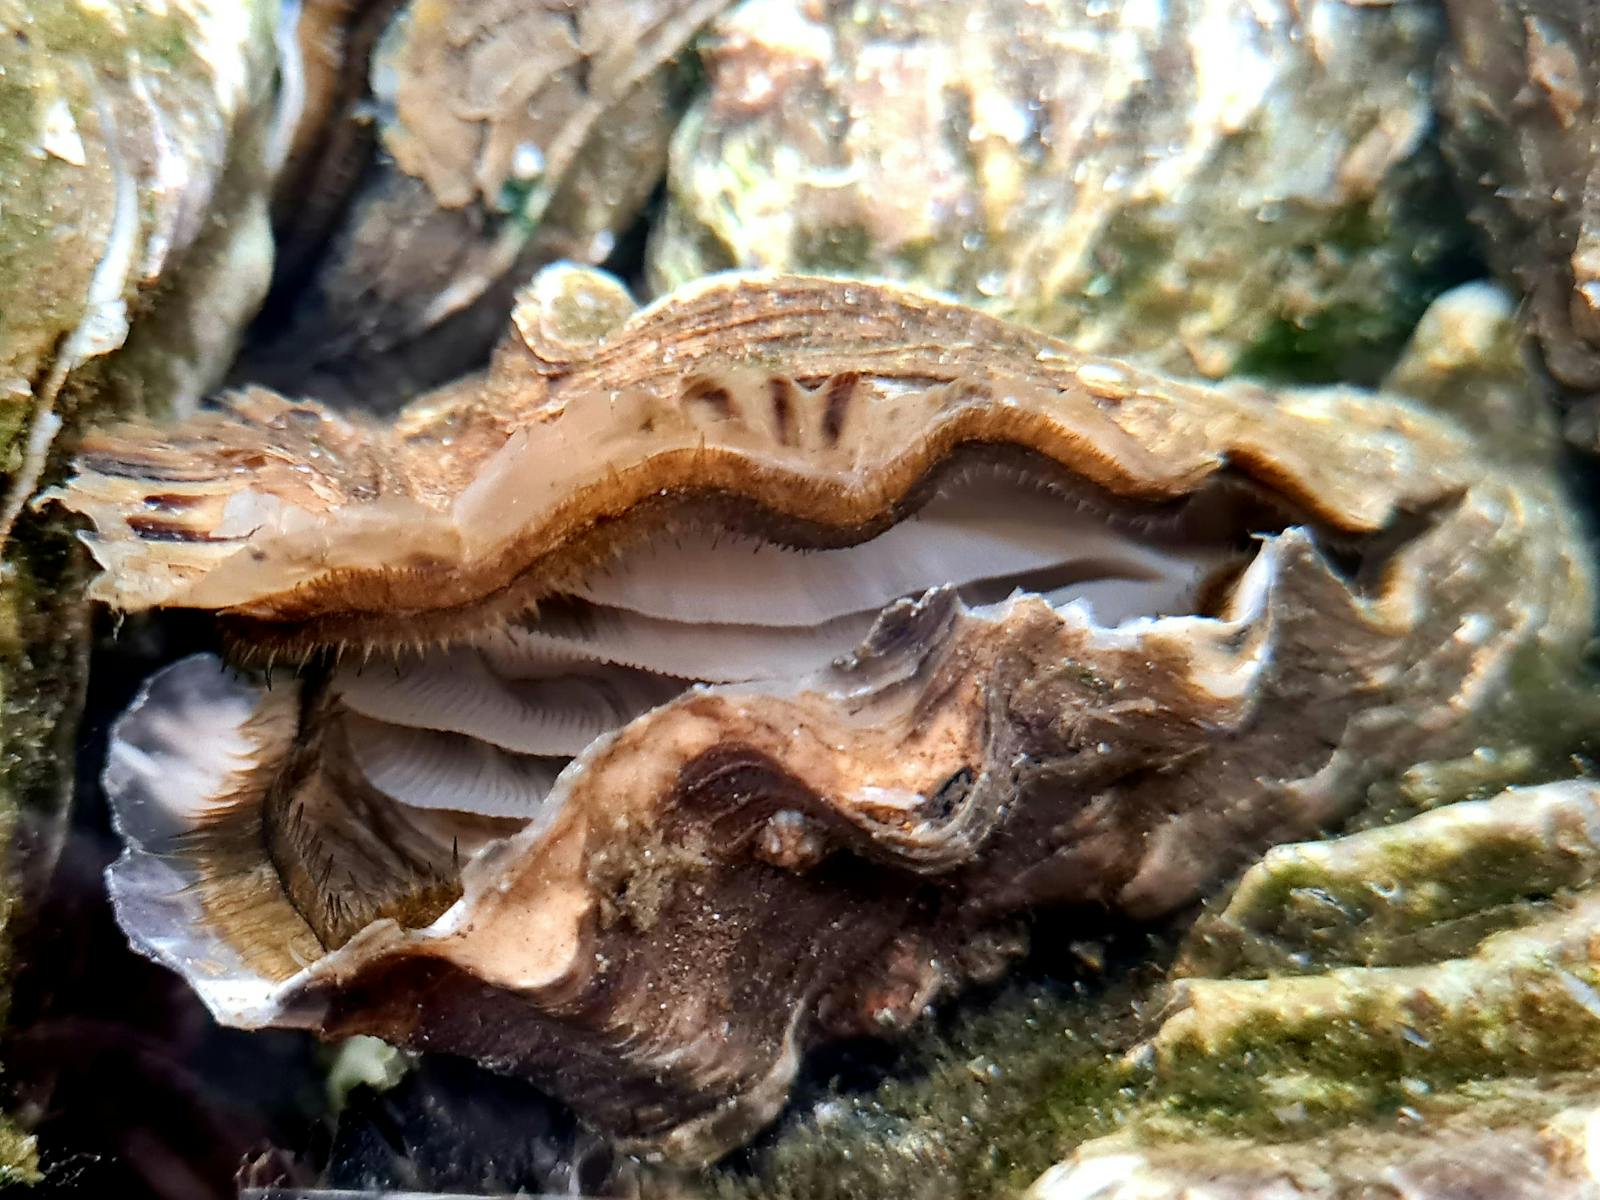 Oyster feeding